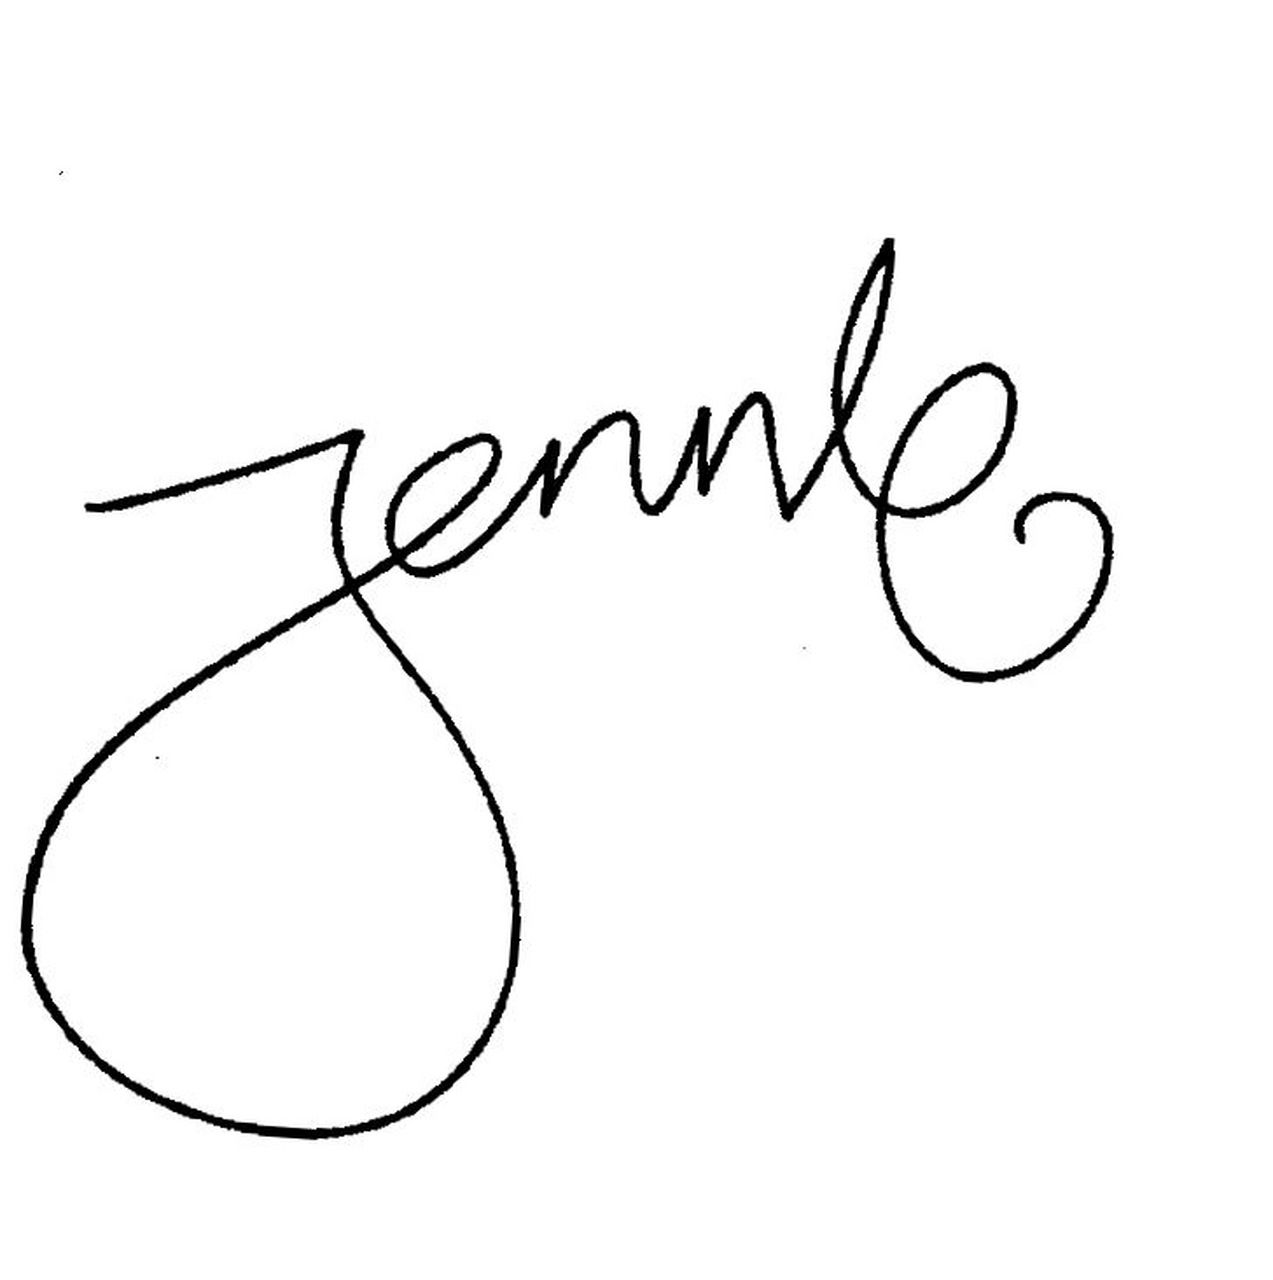 jennie手写签名图片